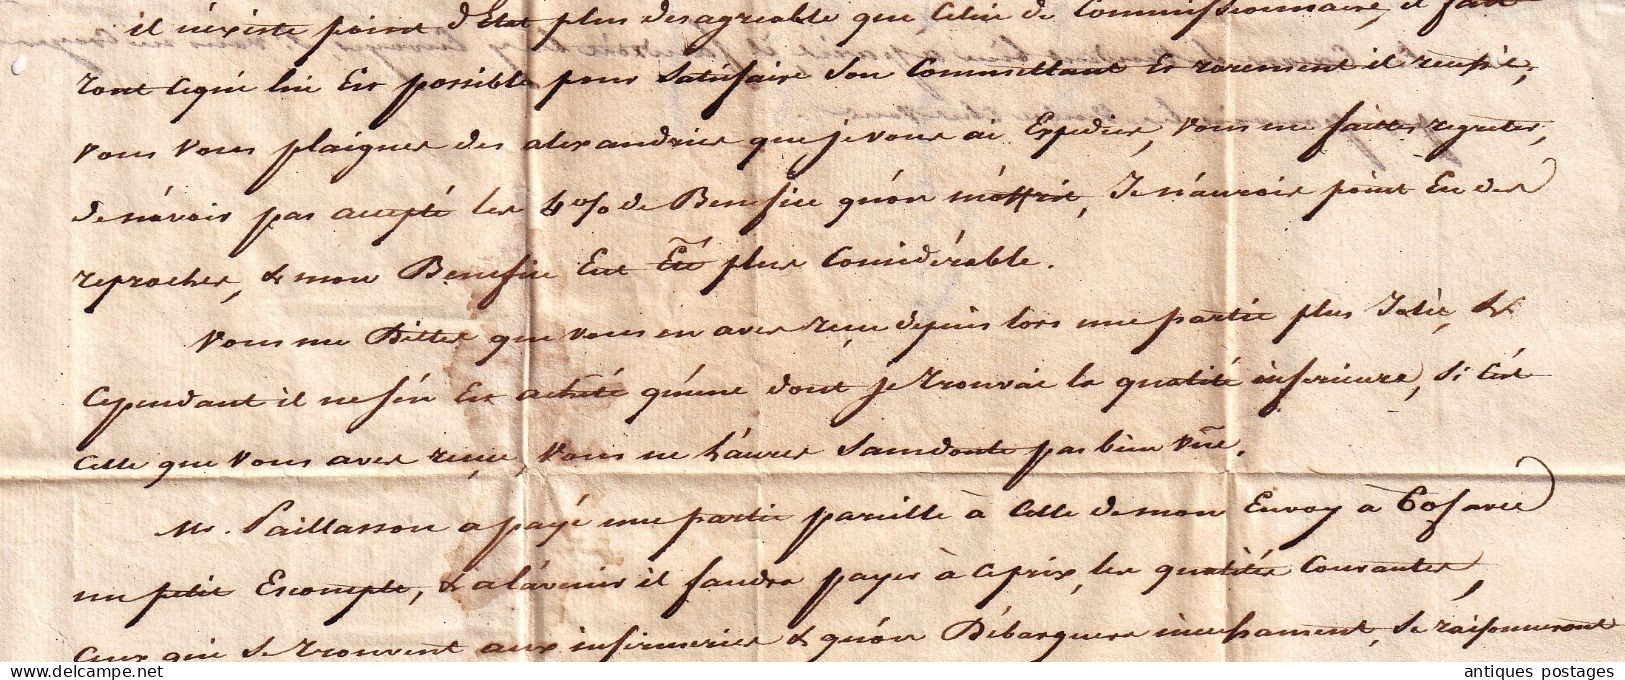 Lettre Marseille 1820 Bonnet Bouches du Rhône pour Lyon Lasausse et Julien Laine Peaux Wool